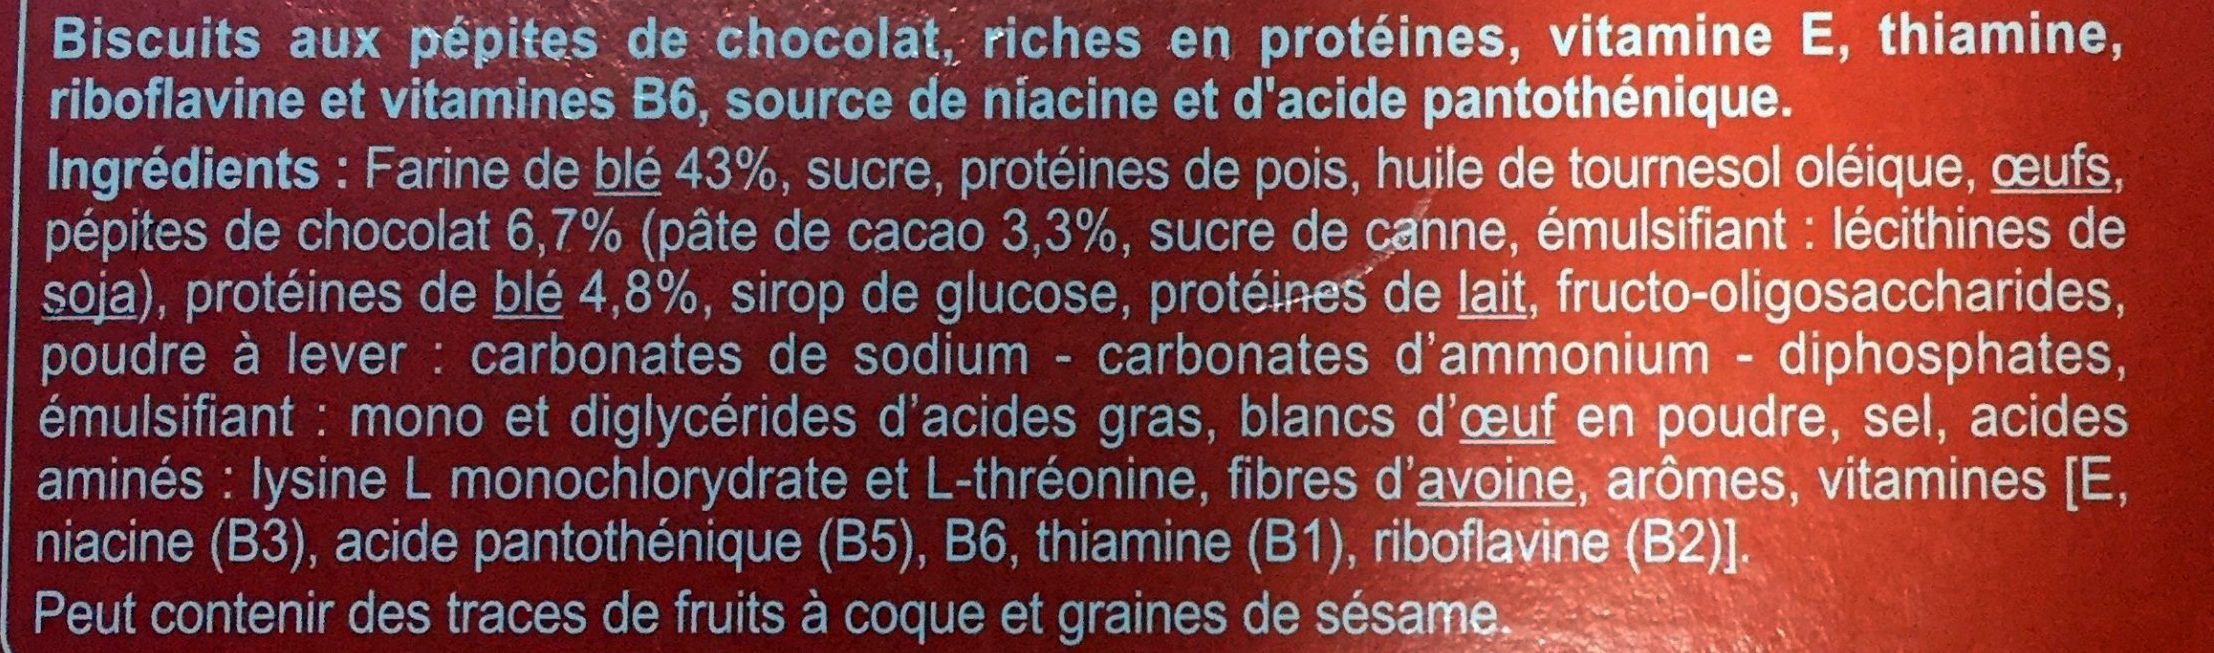 Biscuit aux pépites de chocolat - Ingredients - fr